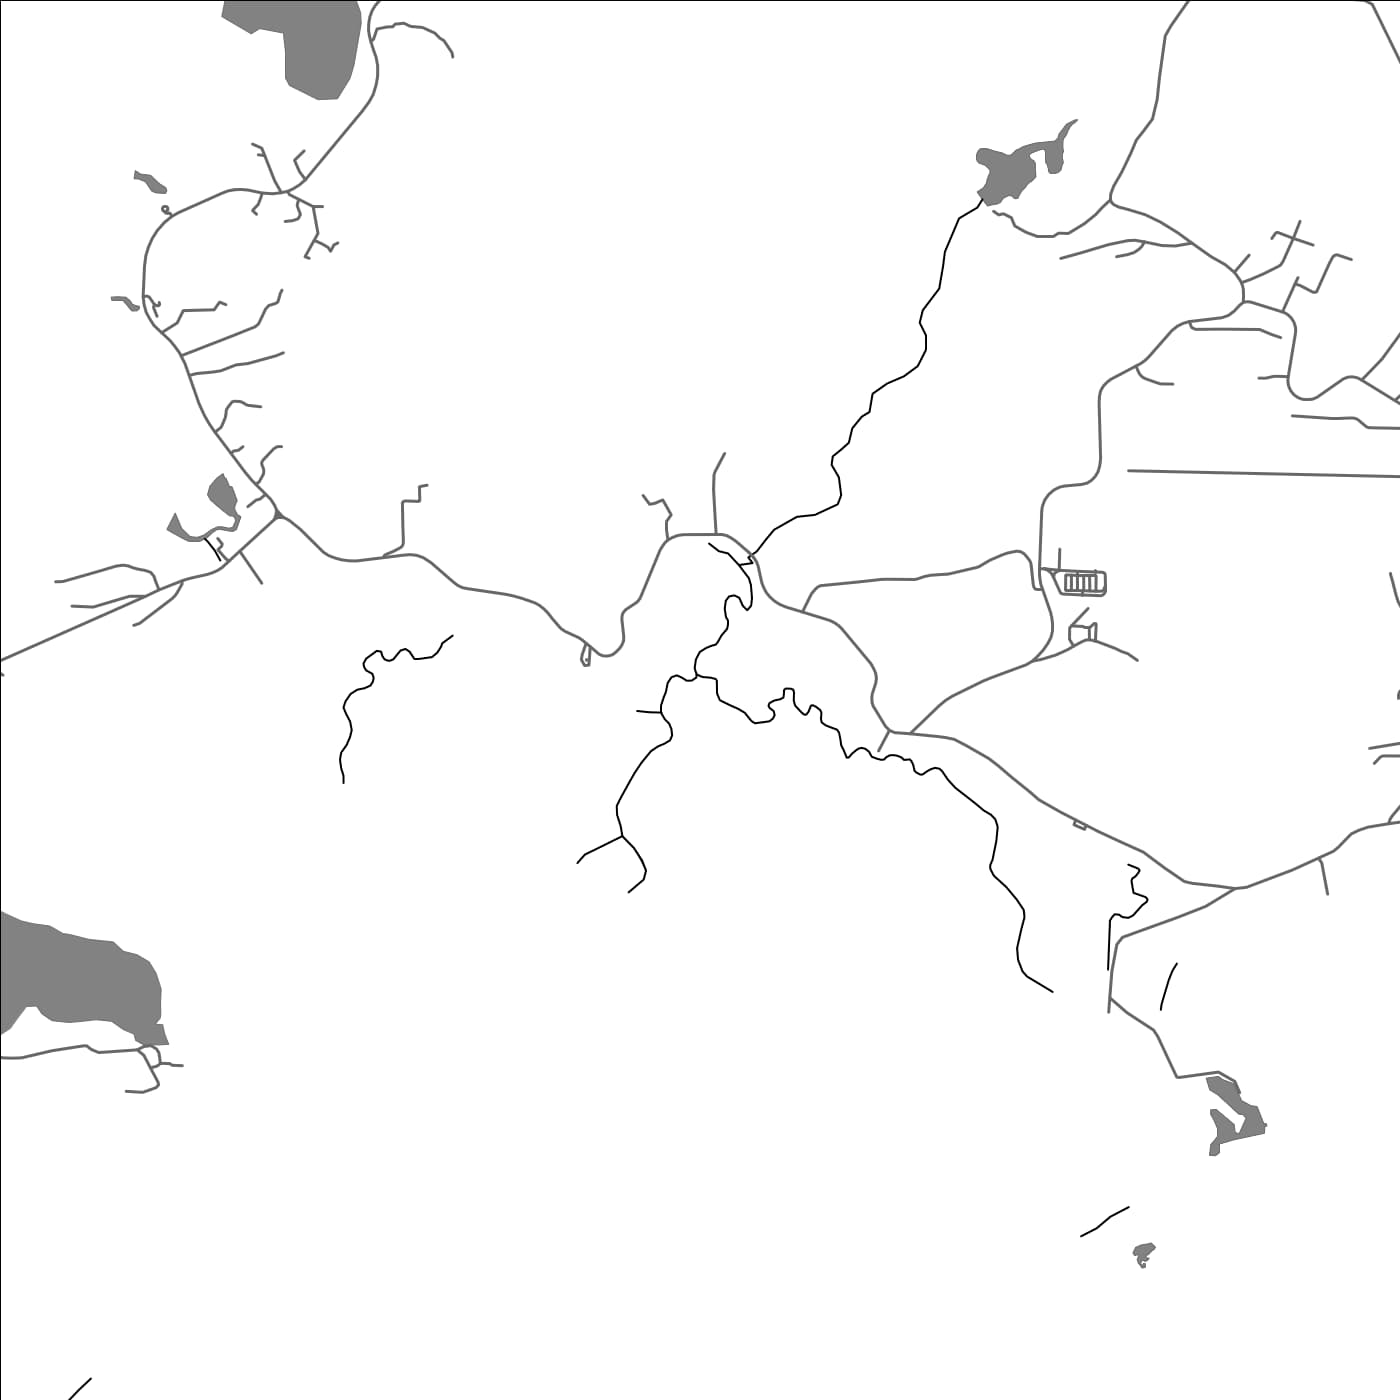 ROAD MAP OF NGERULUOBEL, PALAU BY MAPBAKES